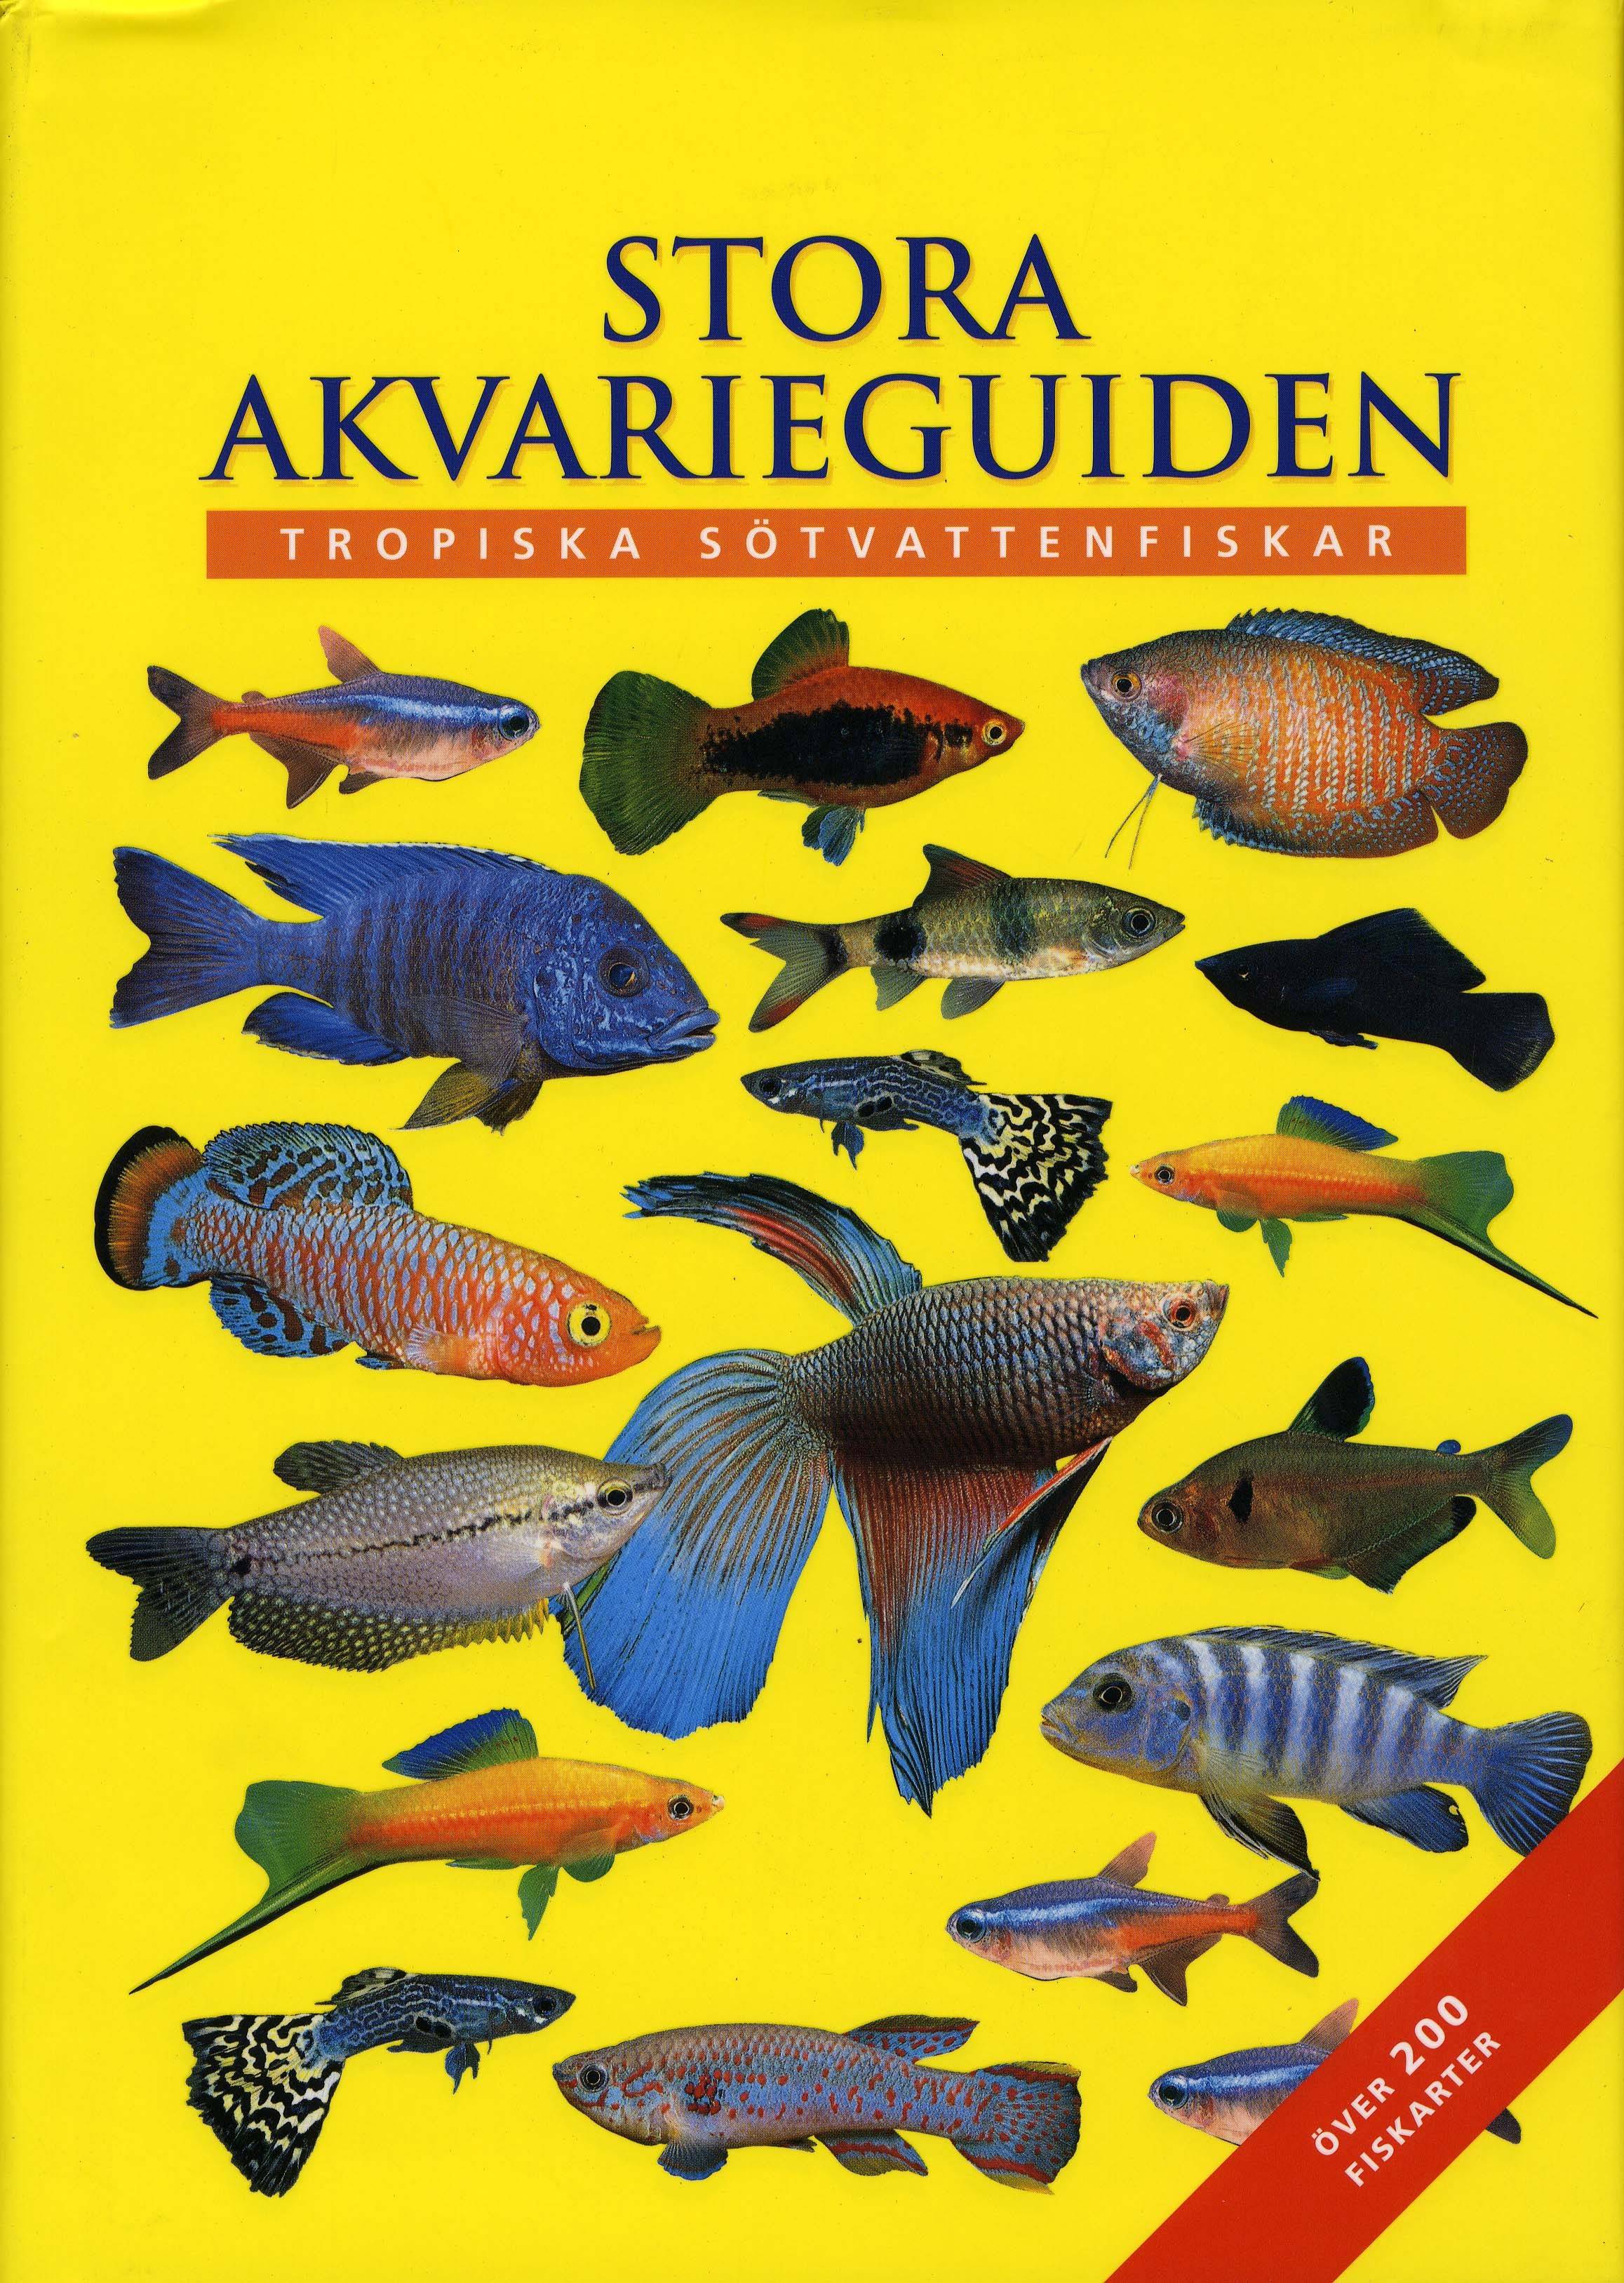 Stora Akvarieguiden : tropiska sötvattenfiskar